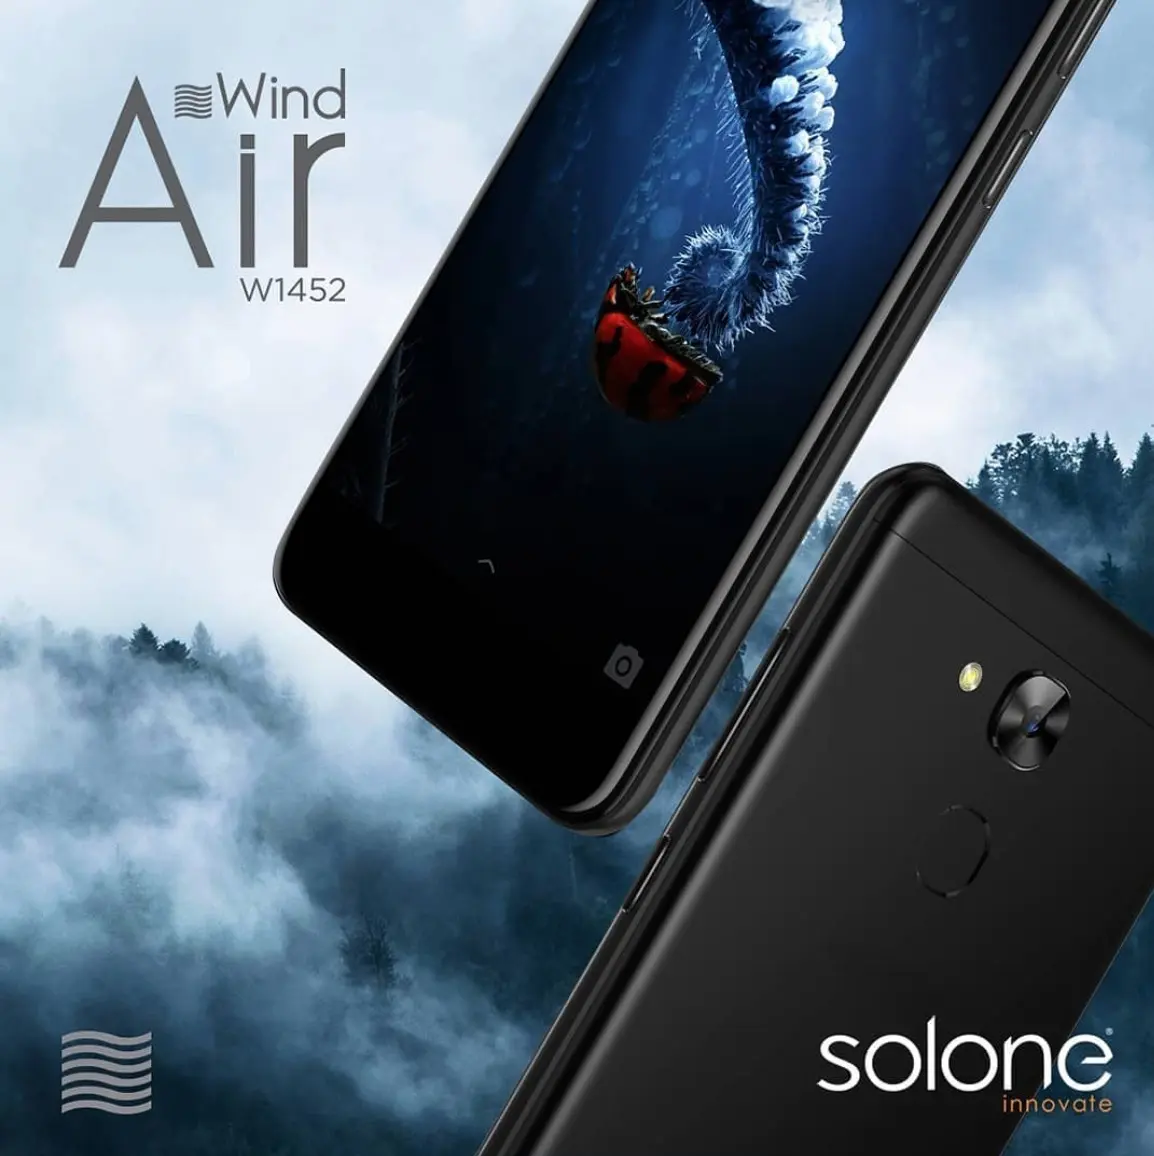 Solone presentan a los smartphones W1450 Breeze, W1452 Air y E1457 Iron